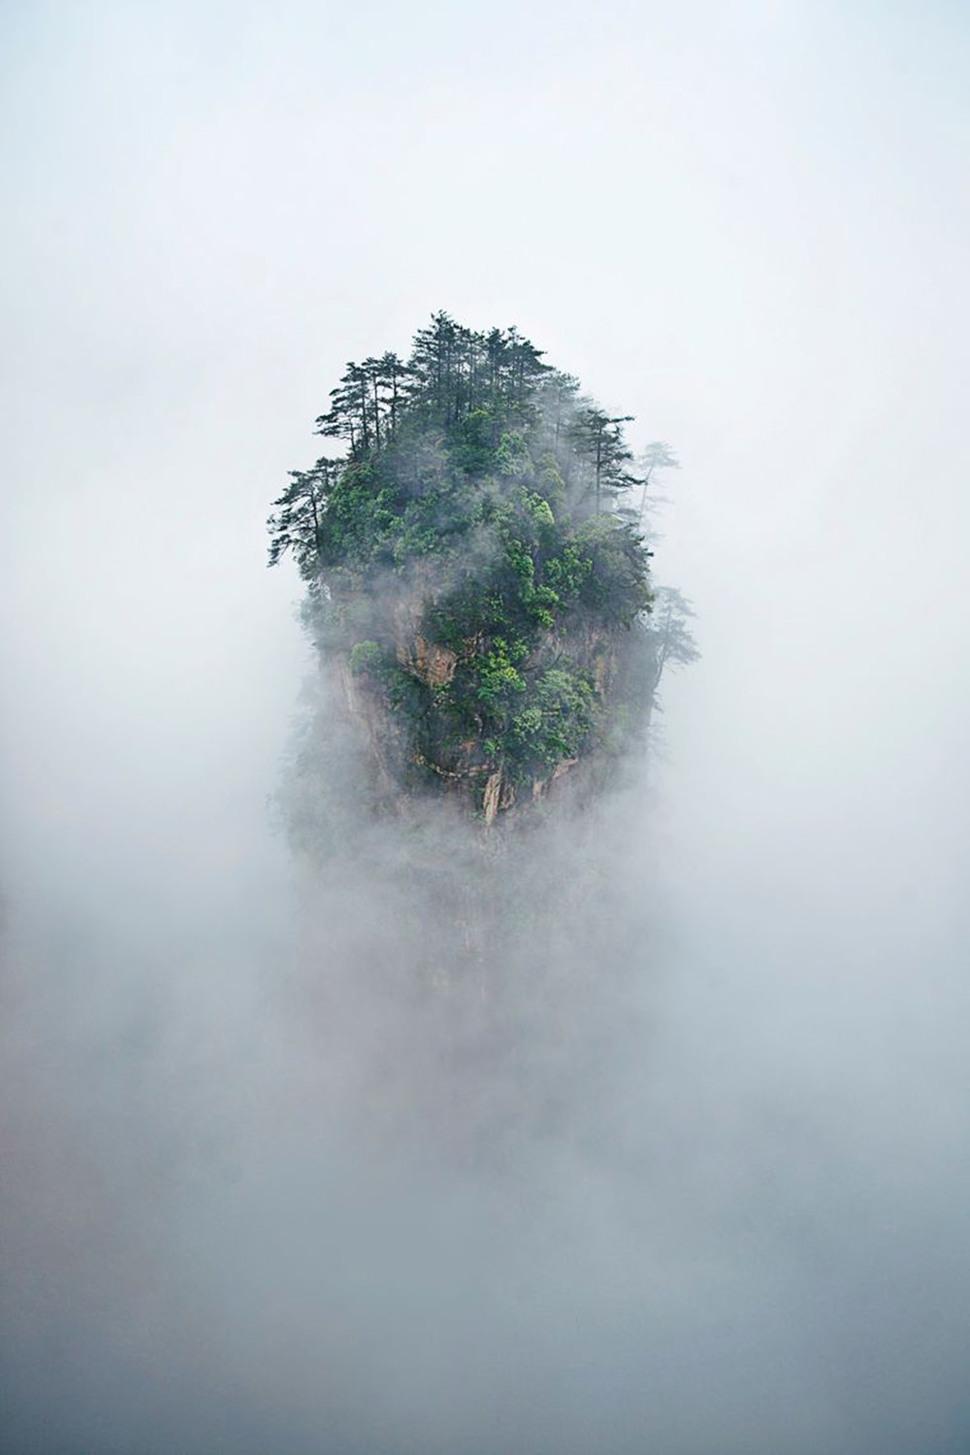 جبال تيانزي- الصين - أكثر الأماكن غرابة